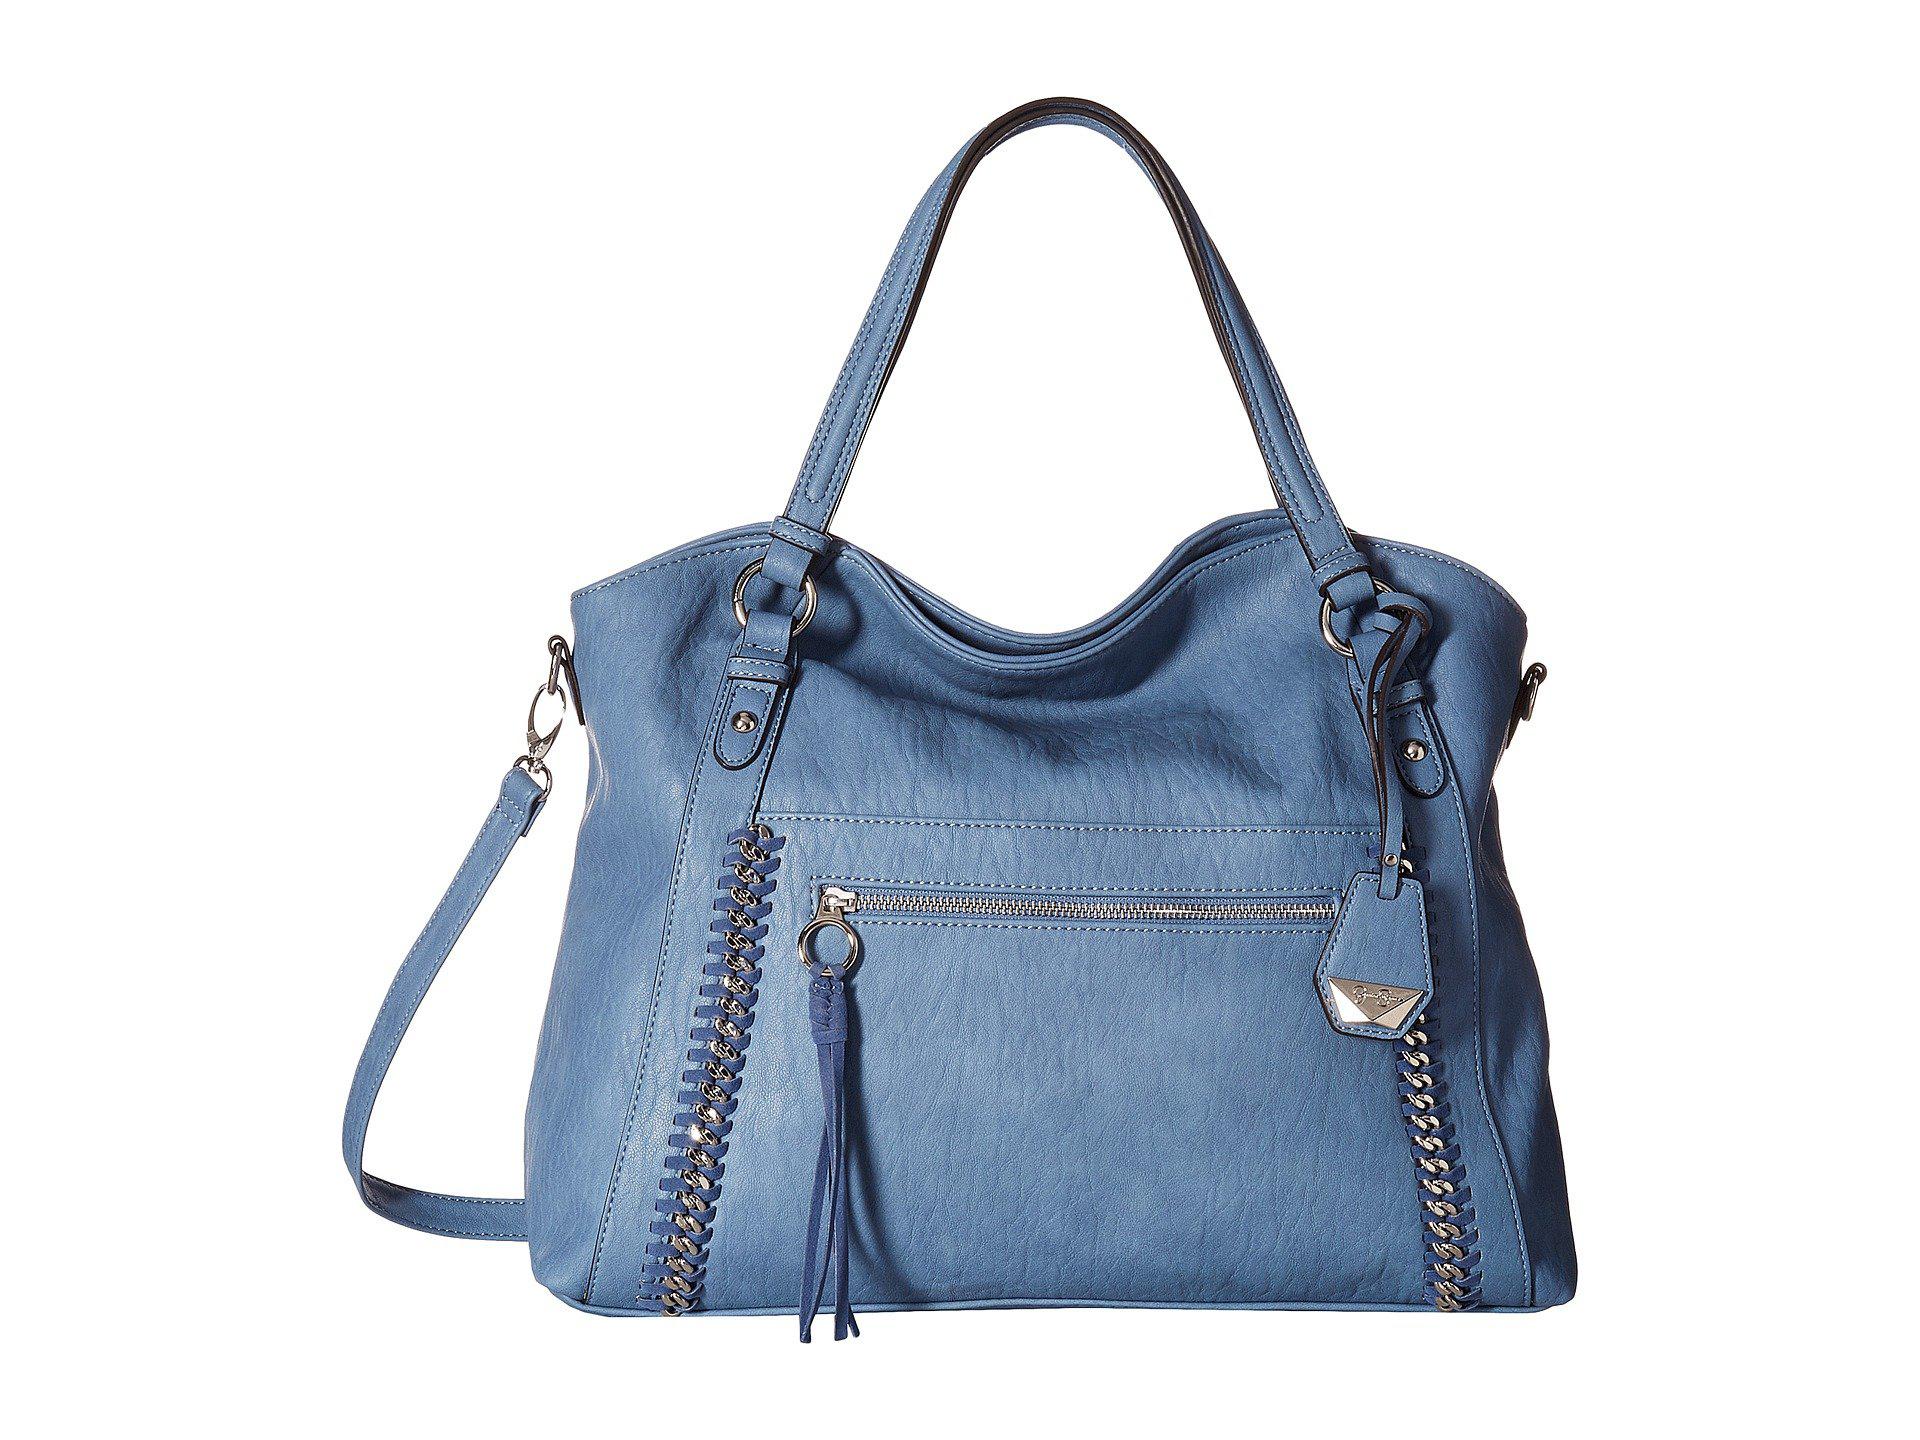 Light grey Jessica Simpson handbag  Jessica simpson handbags, Handbag  shopping, Handbag